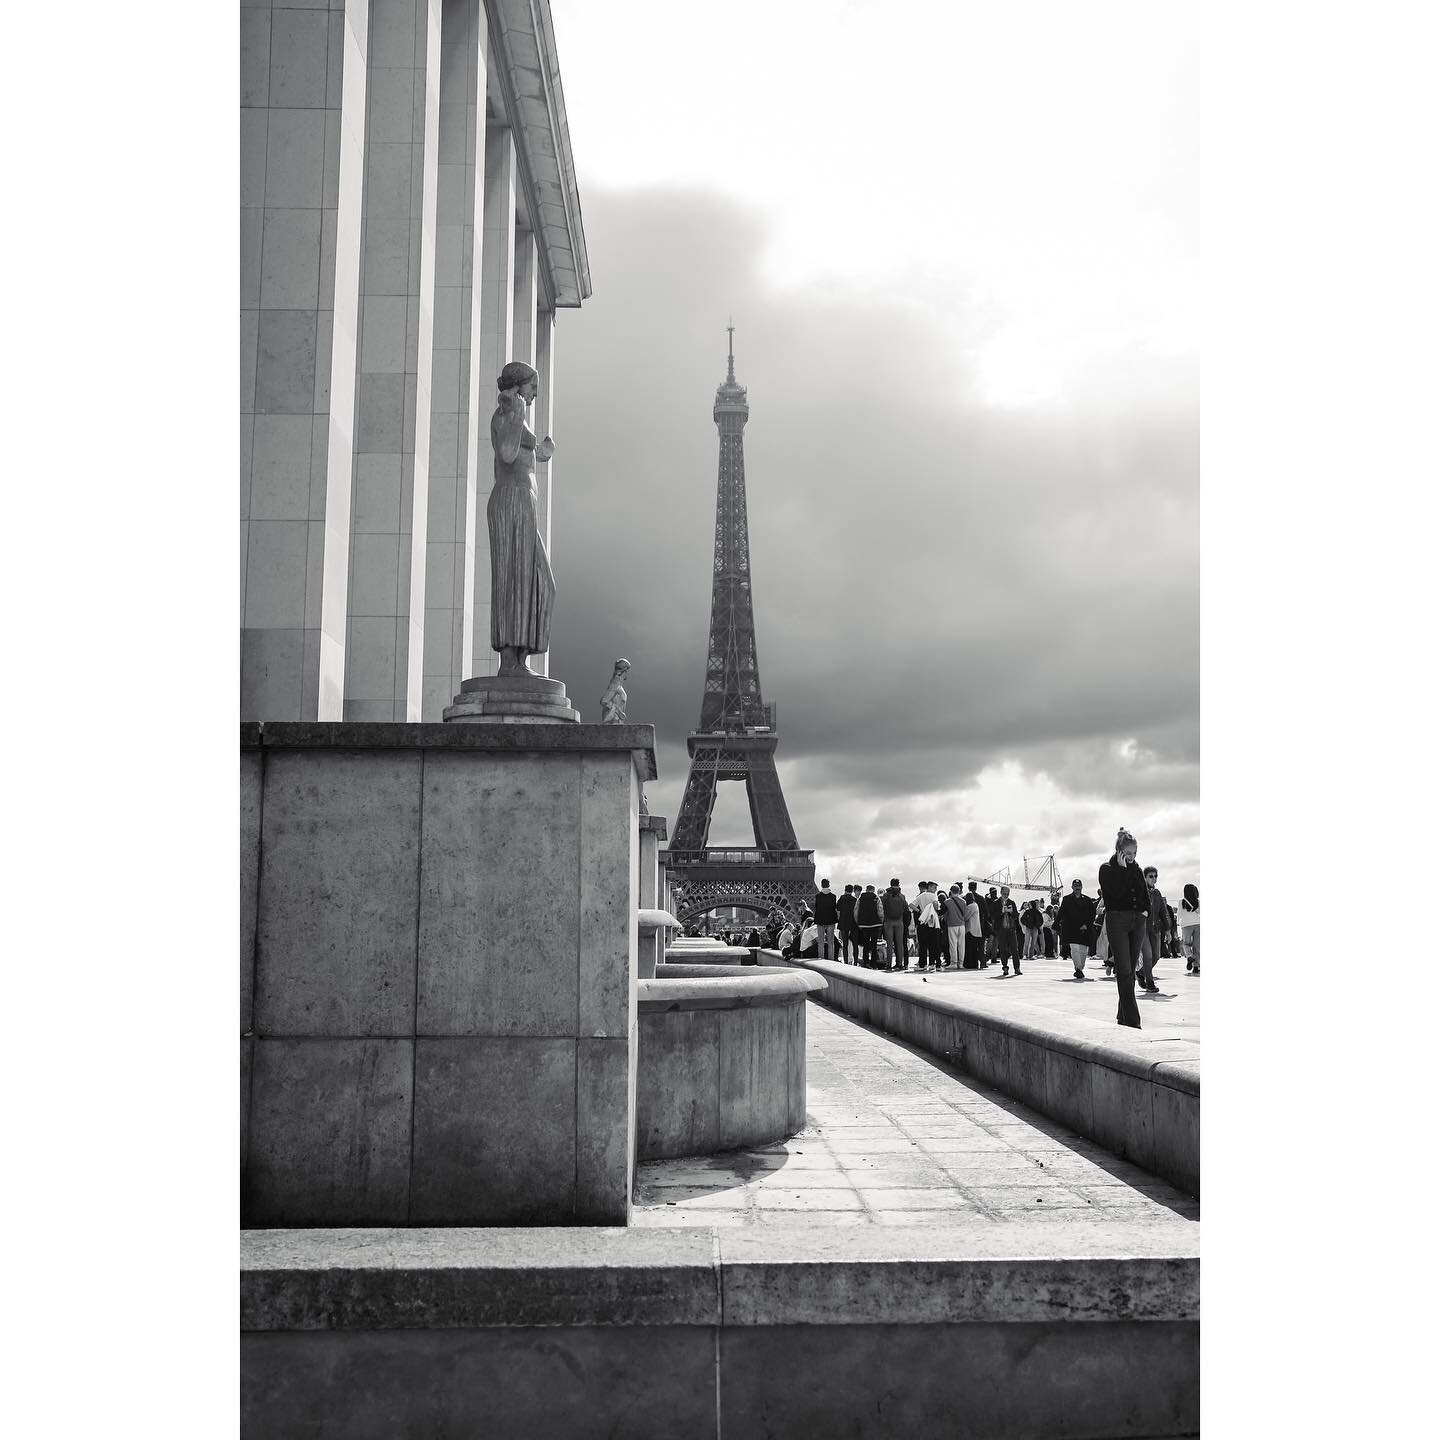 10 shots from Paris.

Locations: Eiffel Tower, Arc de Triomphe, Louvre, Parc des Princes, Sacr&eacute; Coeur.

(📷 Fujifilm X100V)